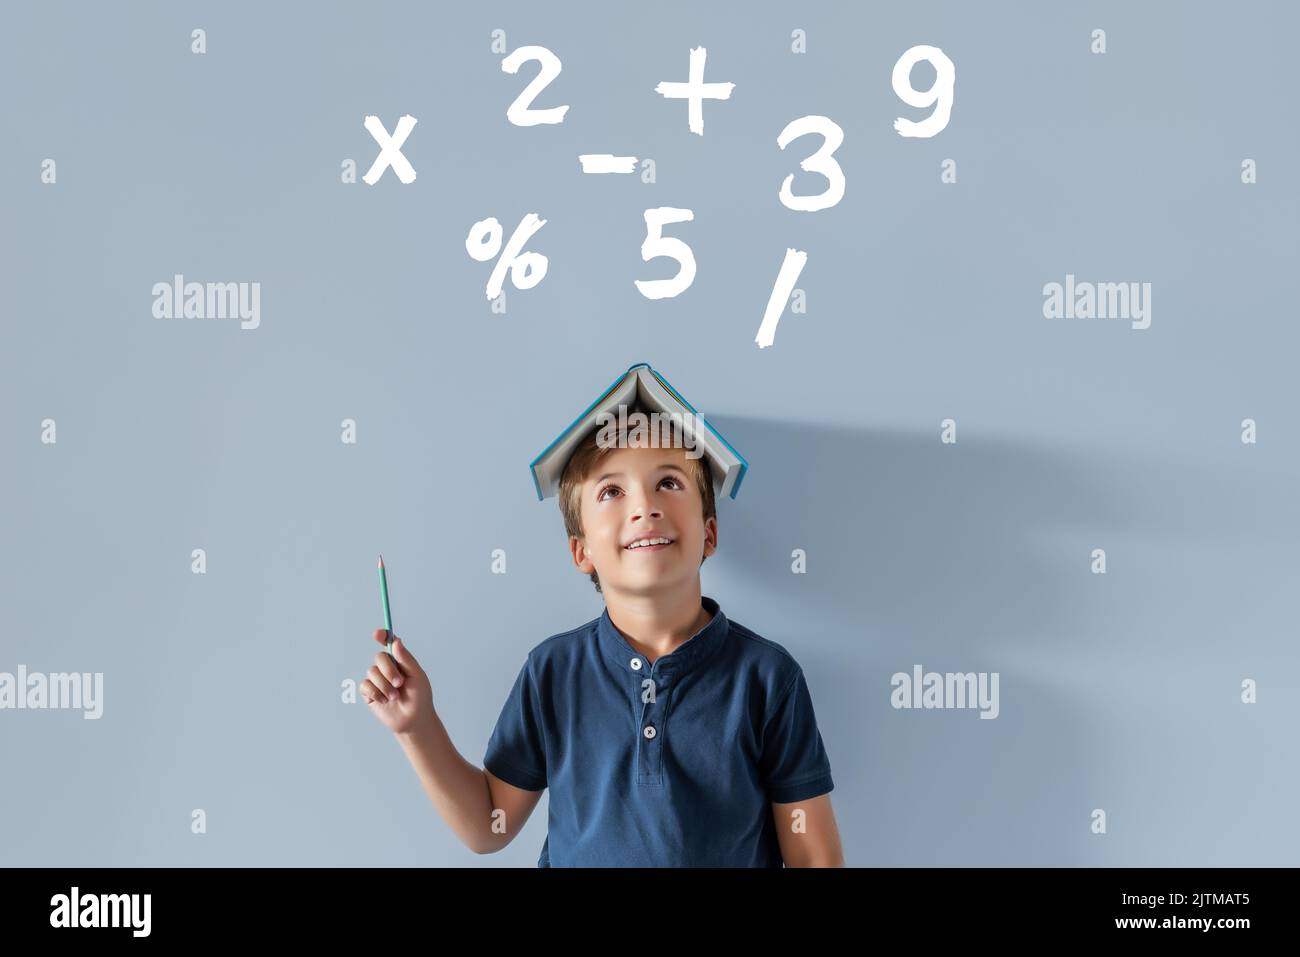 Lächelnder kaukasischer Junge mit einem Buch auf dem Kopf, das mit einem Bleistift auf verschiedene mathematische Symbole zeigt. Zurück in die Schule, Zeit zum Studieren von Probanden mit taub Stockfoto